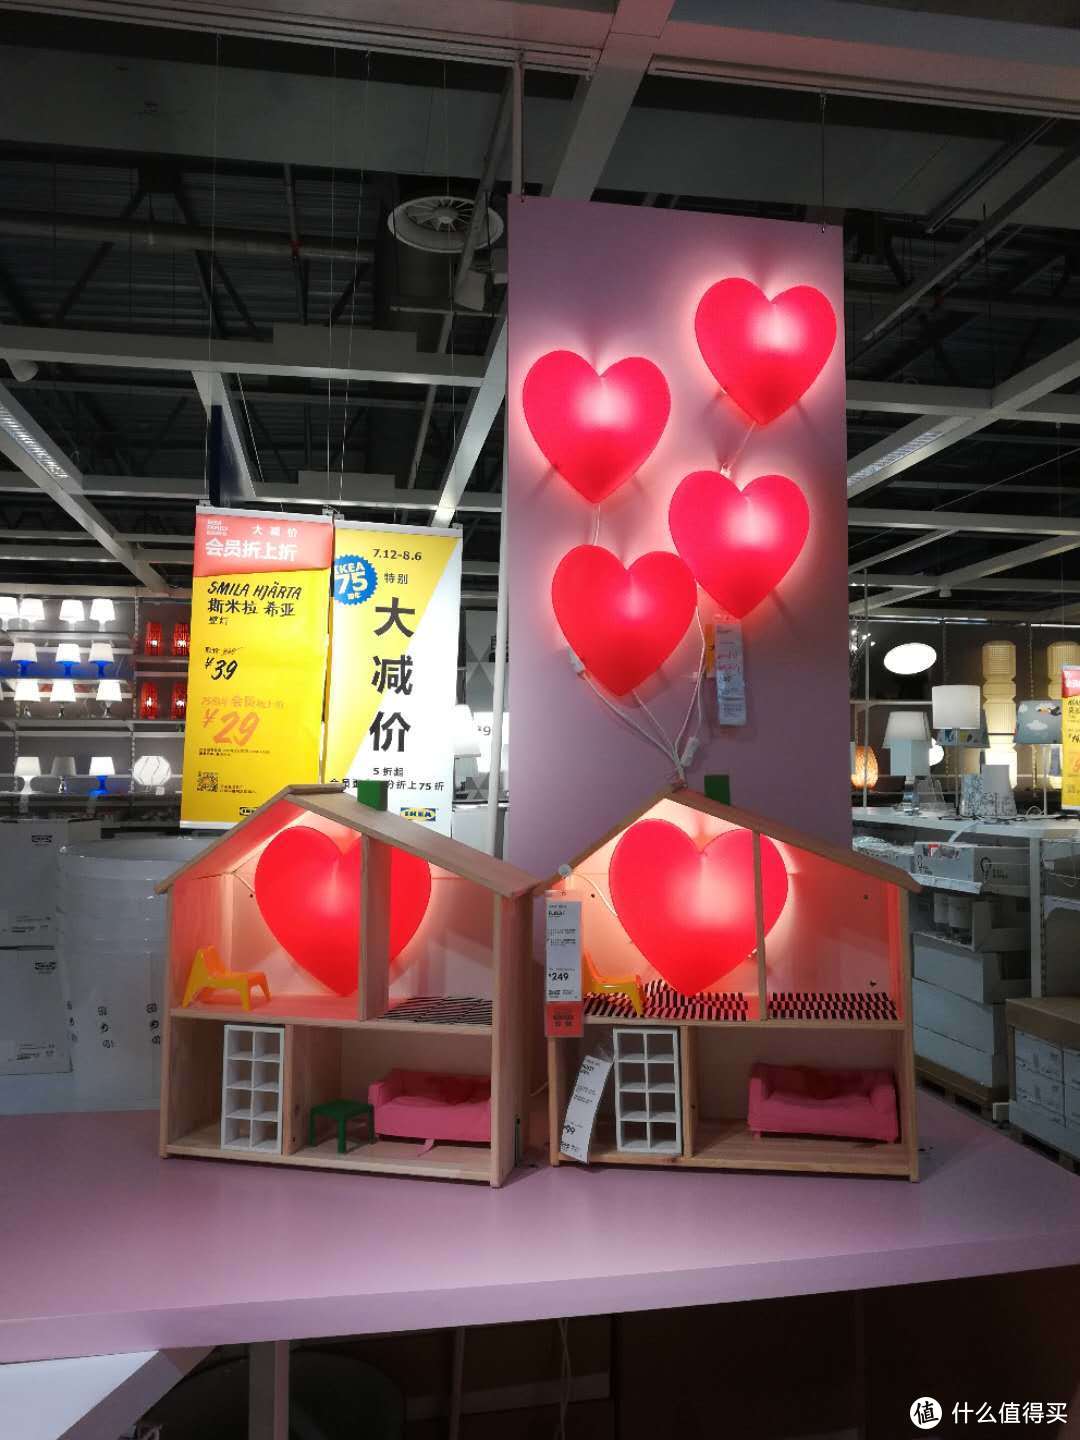 那些打折的宜家小物—IKEA 宜家 天津商场游逛记